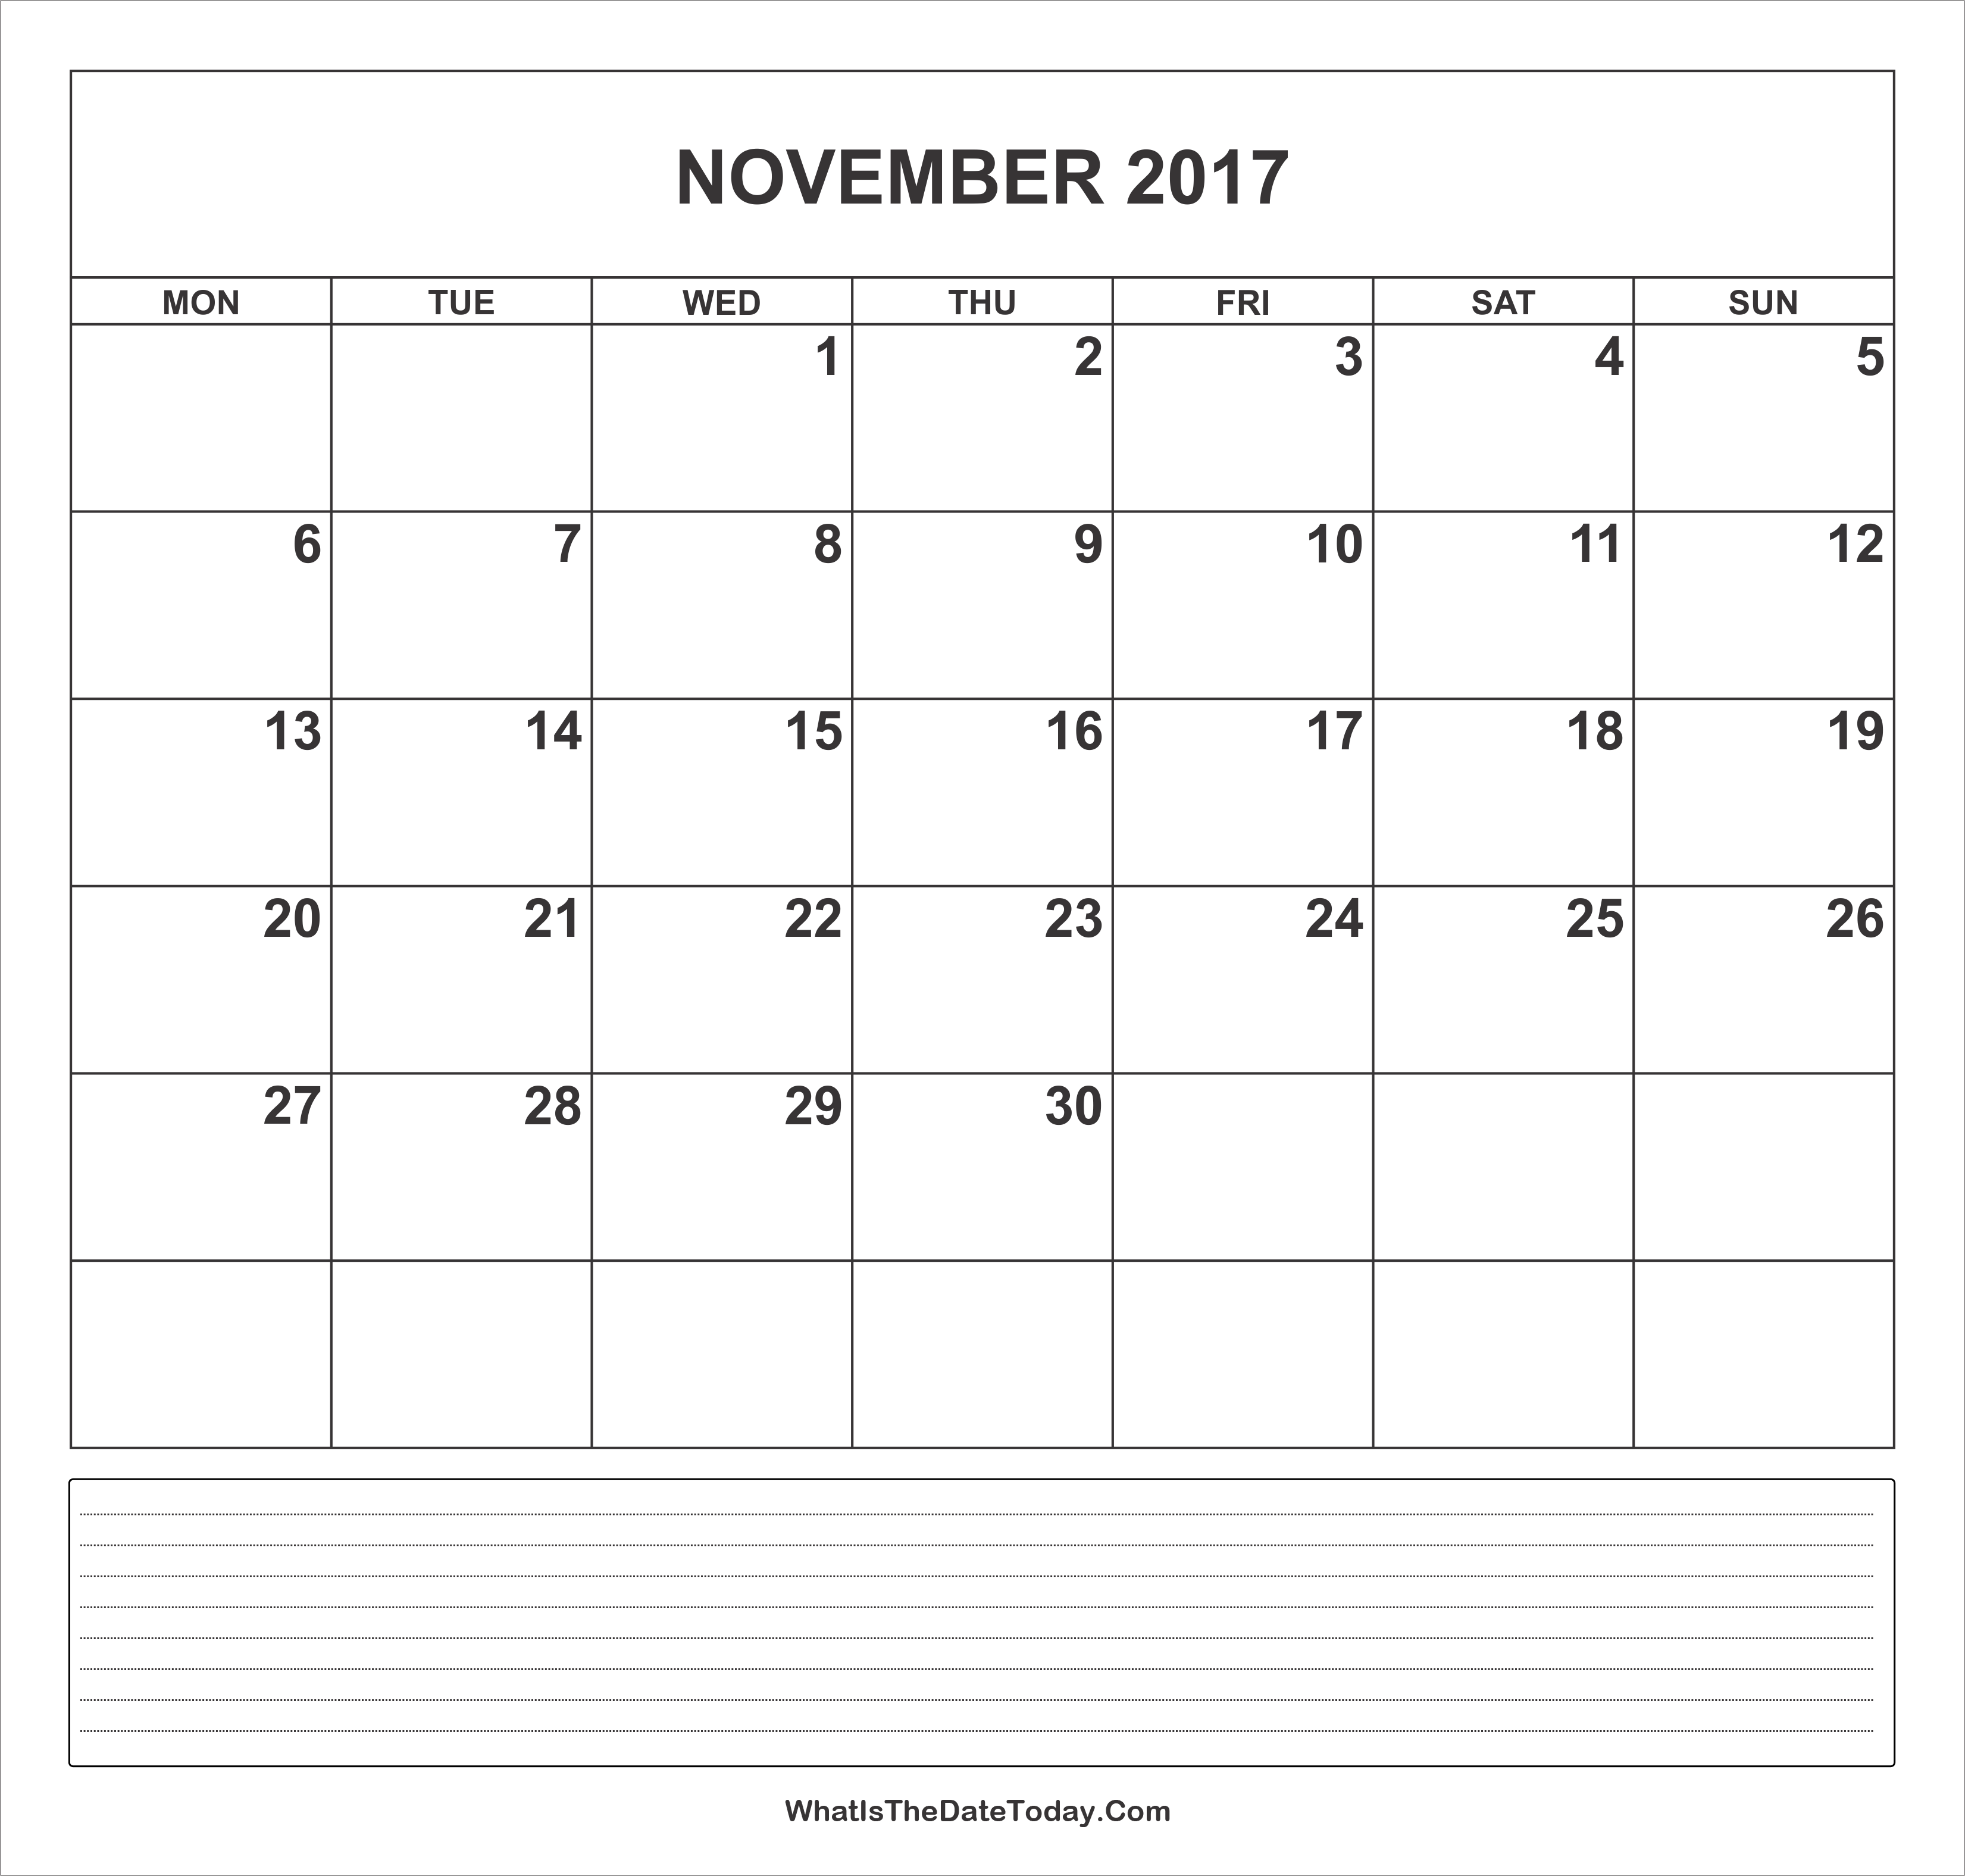 calendar-november-2017-with-notes-whatisthedatetoday-com